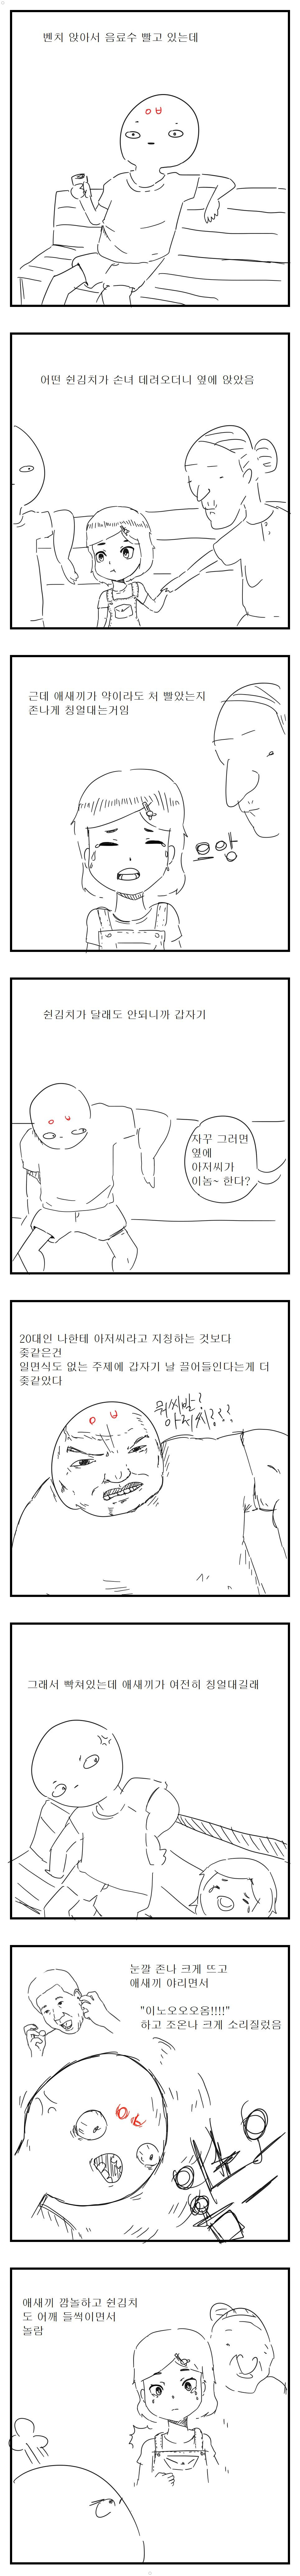 예전에 레전드 쉰김치 아줌매미 놀래킨 썰만화 재밌네 (다른만화) ㅋㅠㅋㅋ 이미지 #1